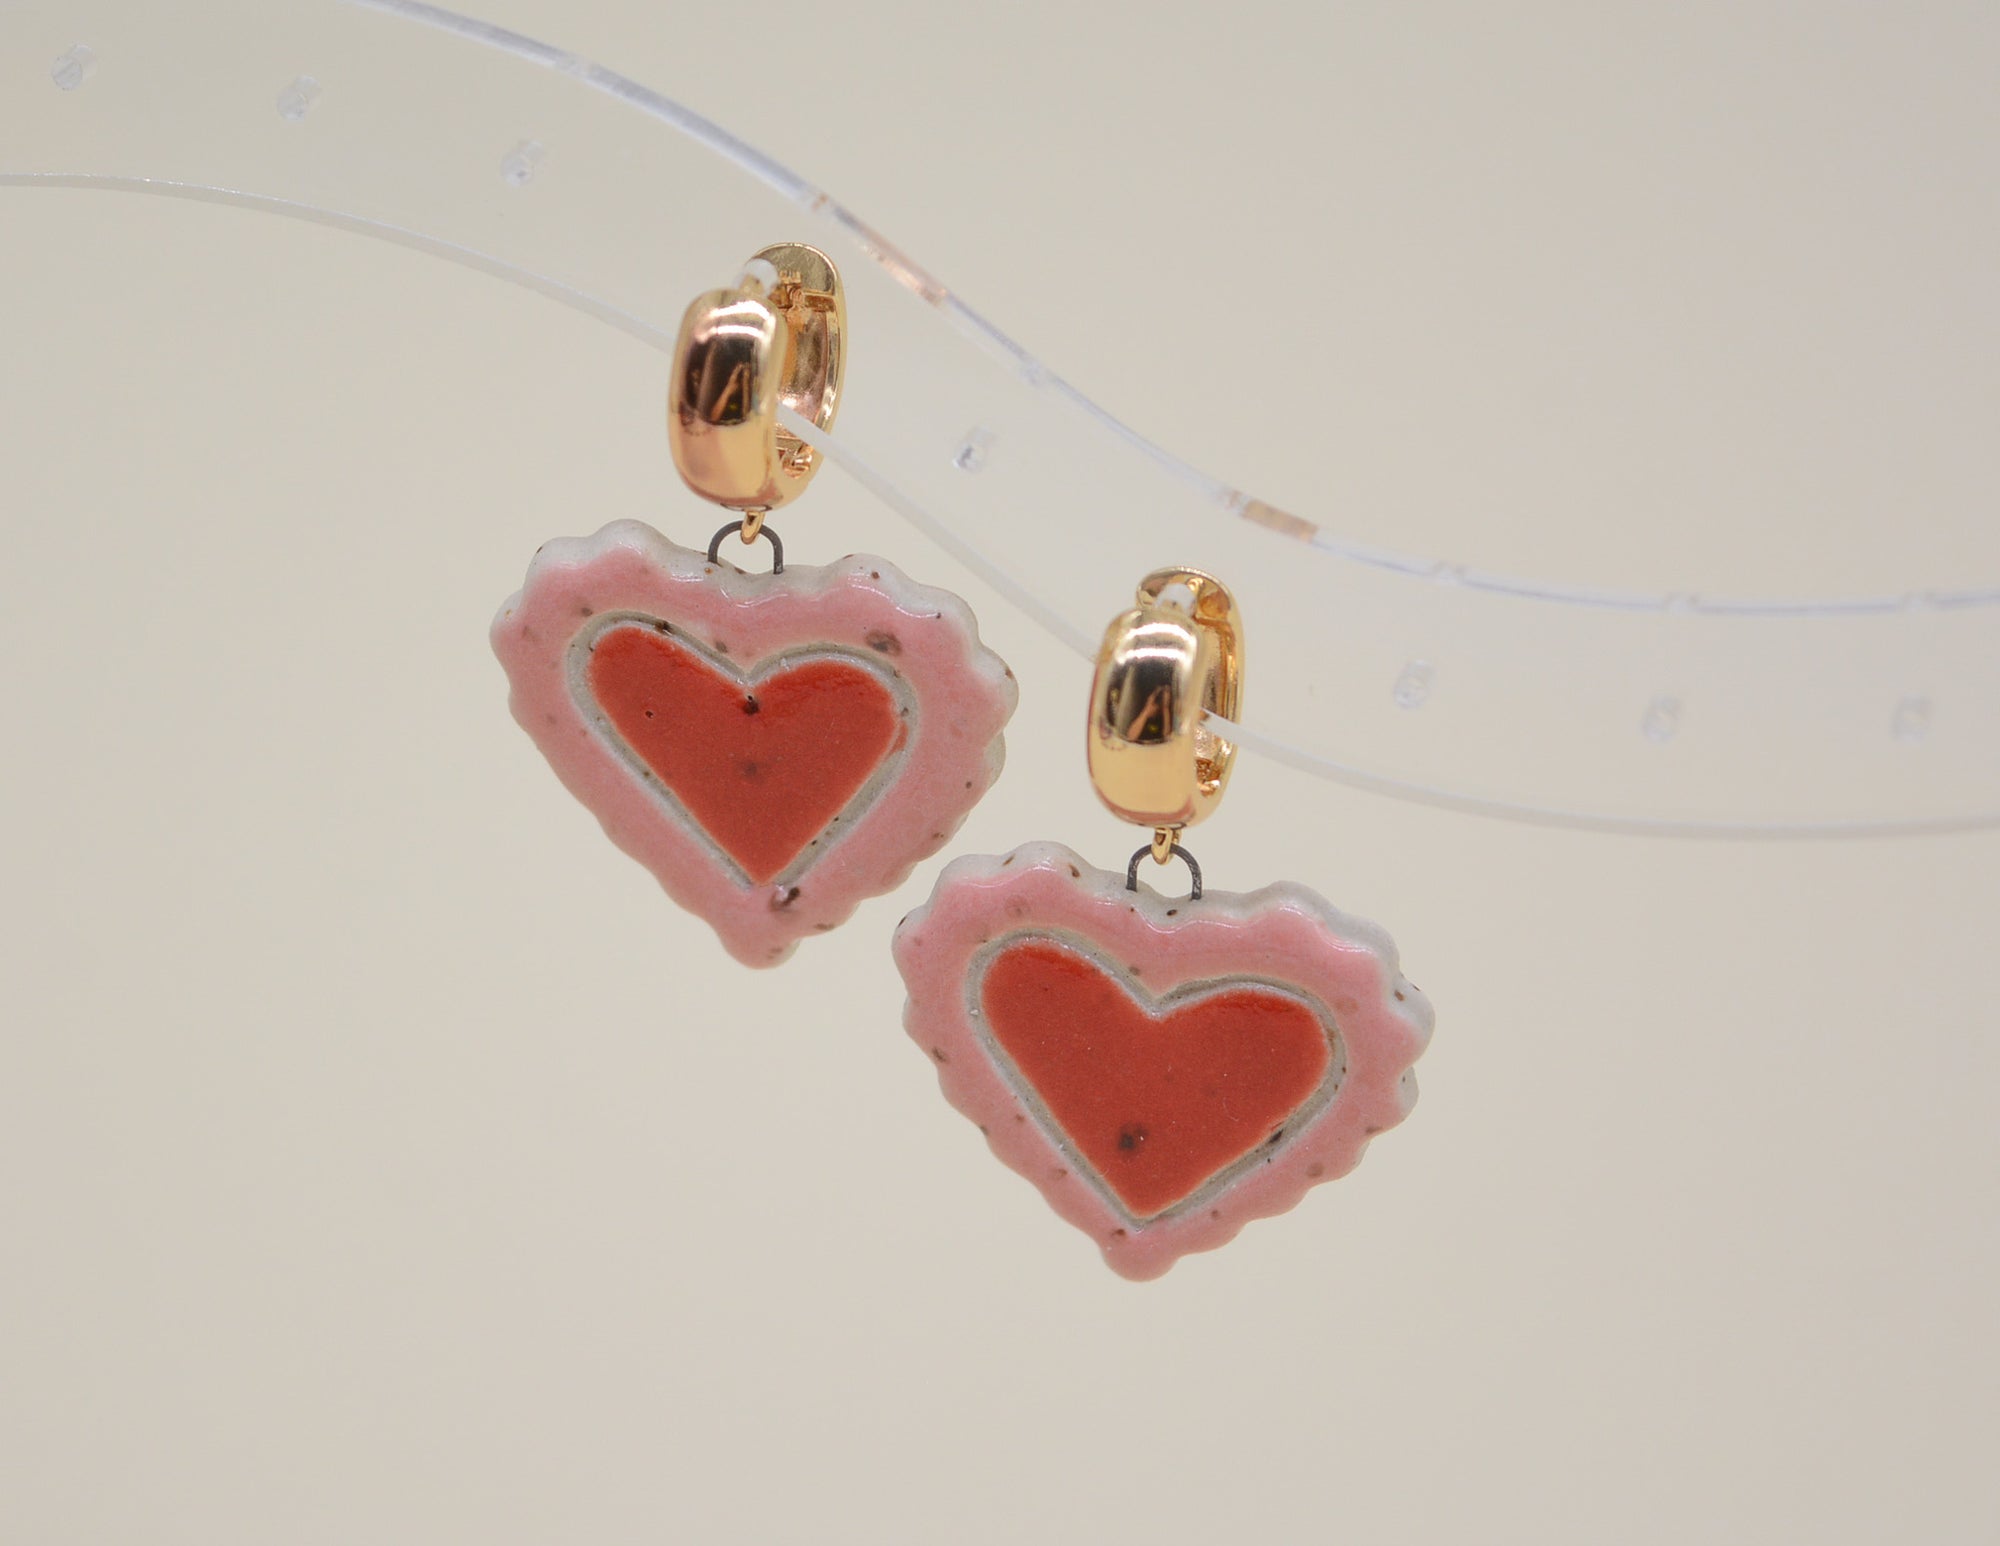 Doily Heart Earrings